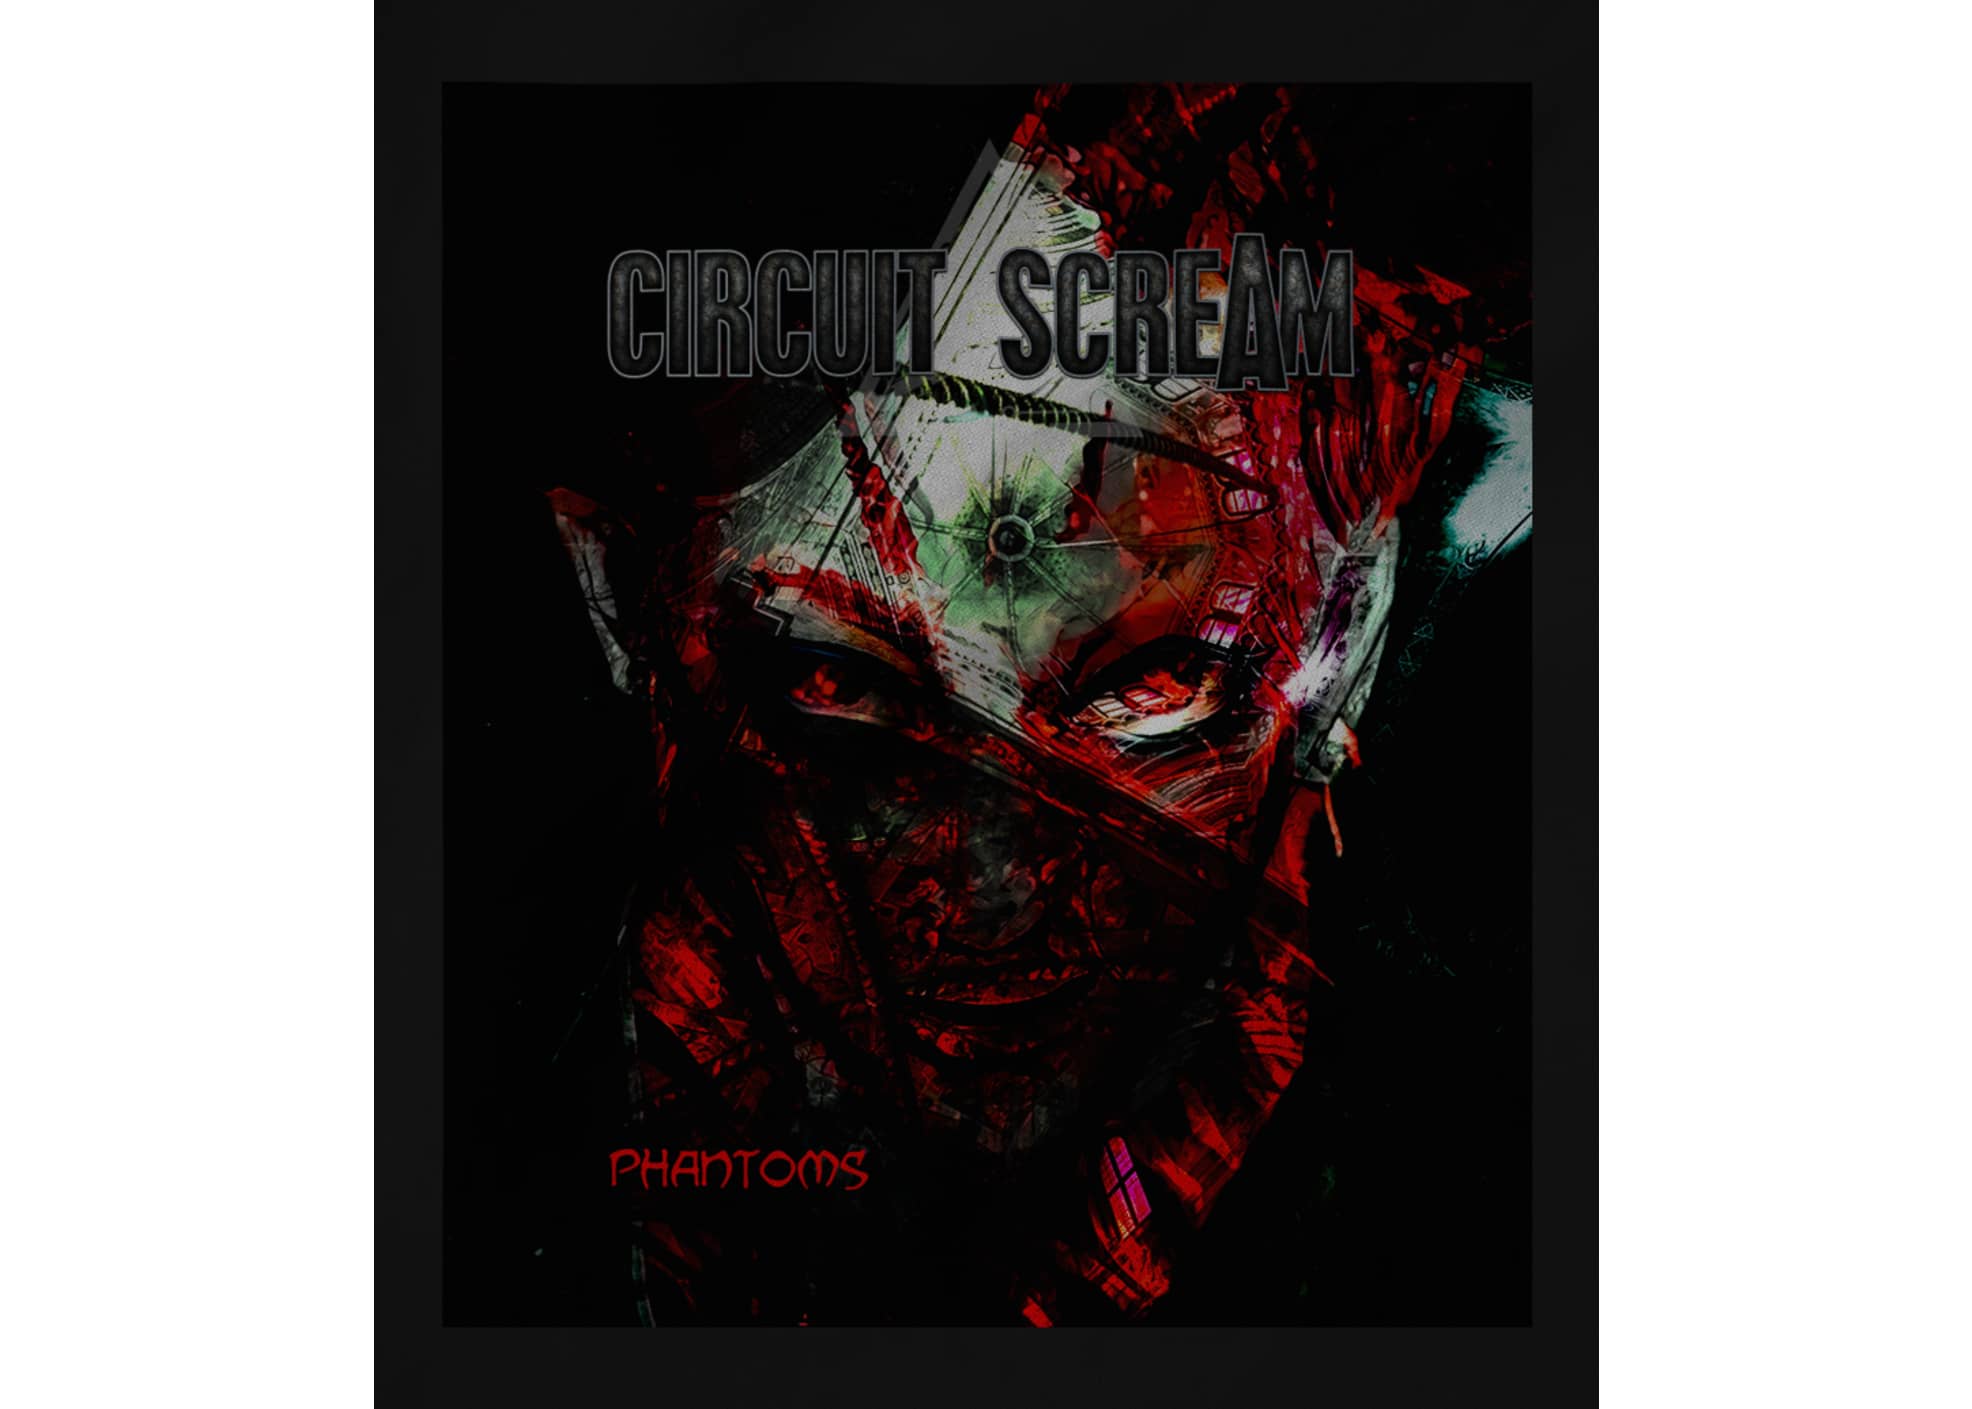 Circuit scream circuit scream  phantoms  cover art 1617323126